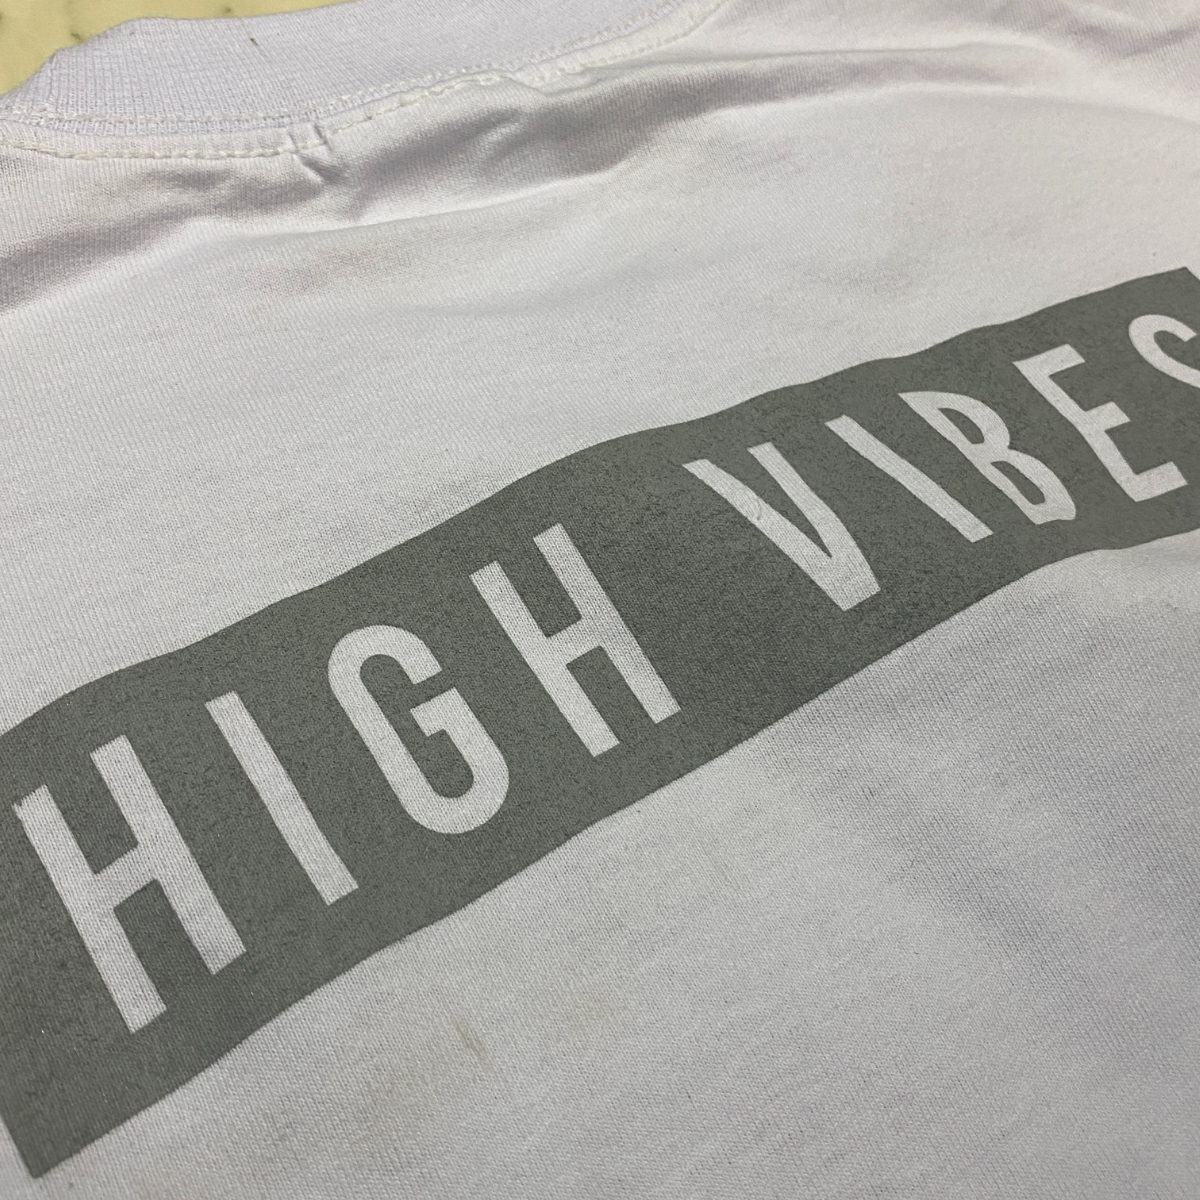 LA発 【XL】 HIGH VIBES アンダーグラウンド グラフィック ヘビーウェイト 半袖 Tシャツ 白 ハイバイブス Modelo チカーノ メキシコ